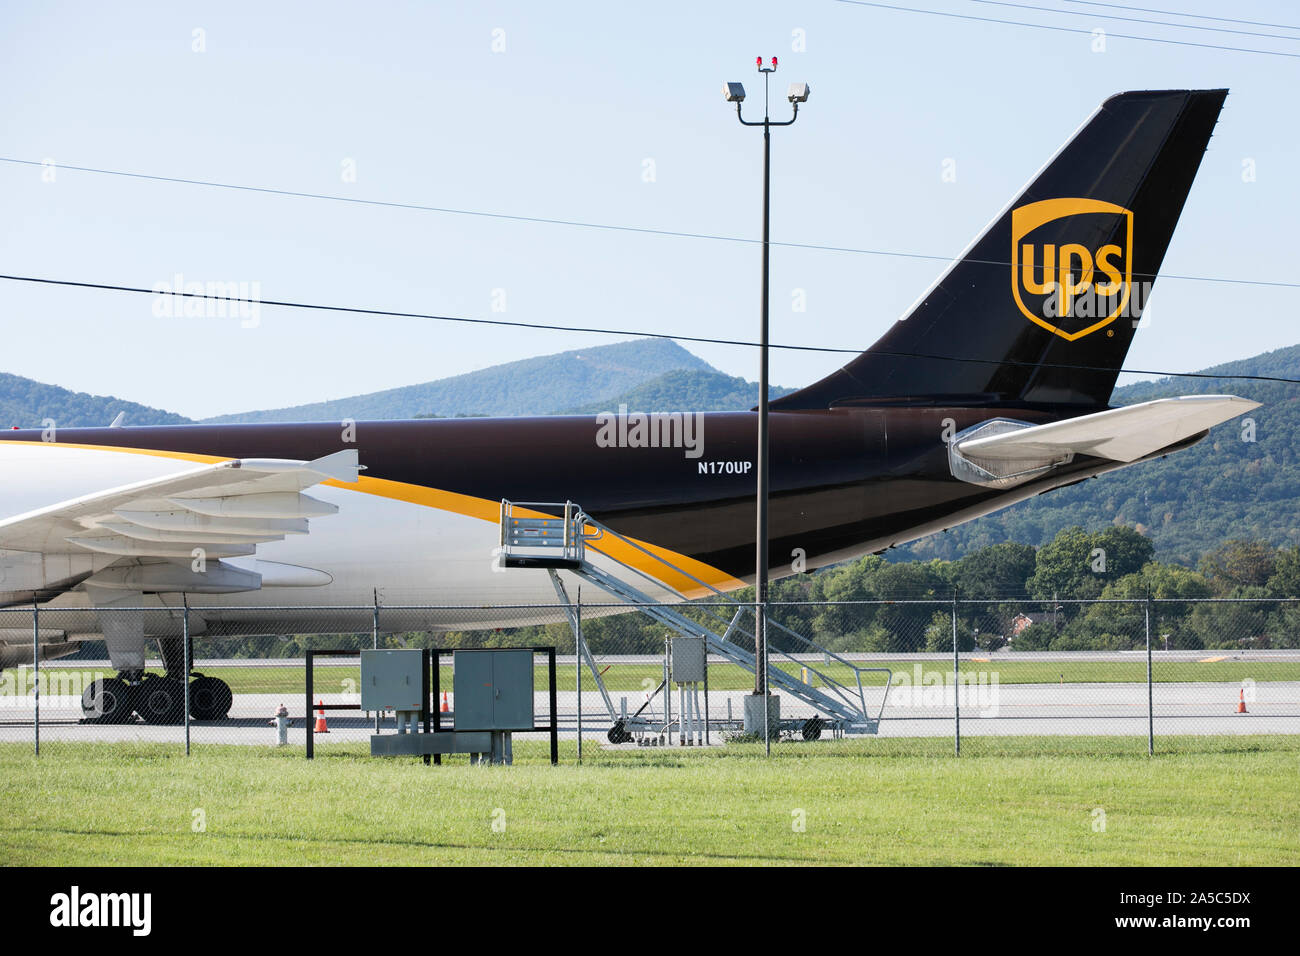 Un UPS (United Parcel Service) Airlines Airbus A300 avion cargo à Roanoke, Virginie le 15 septembre 2019. Banque D'Images